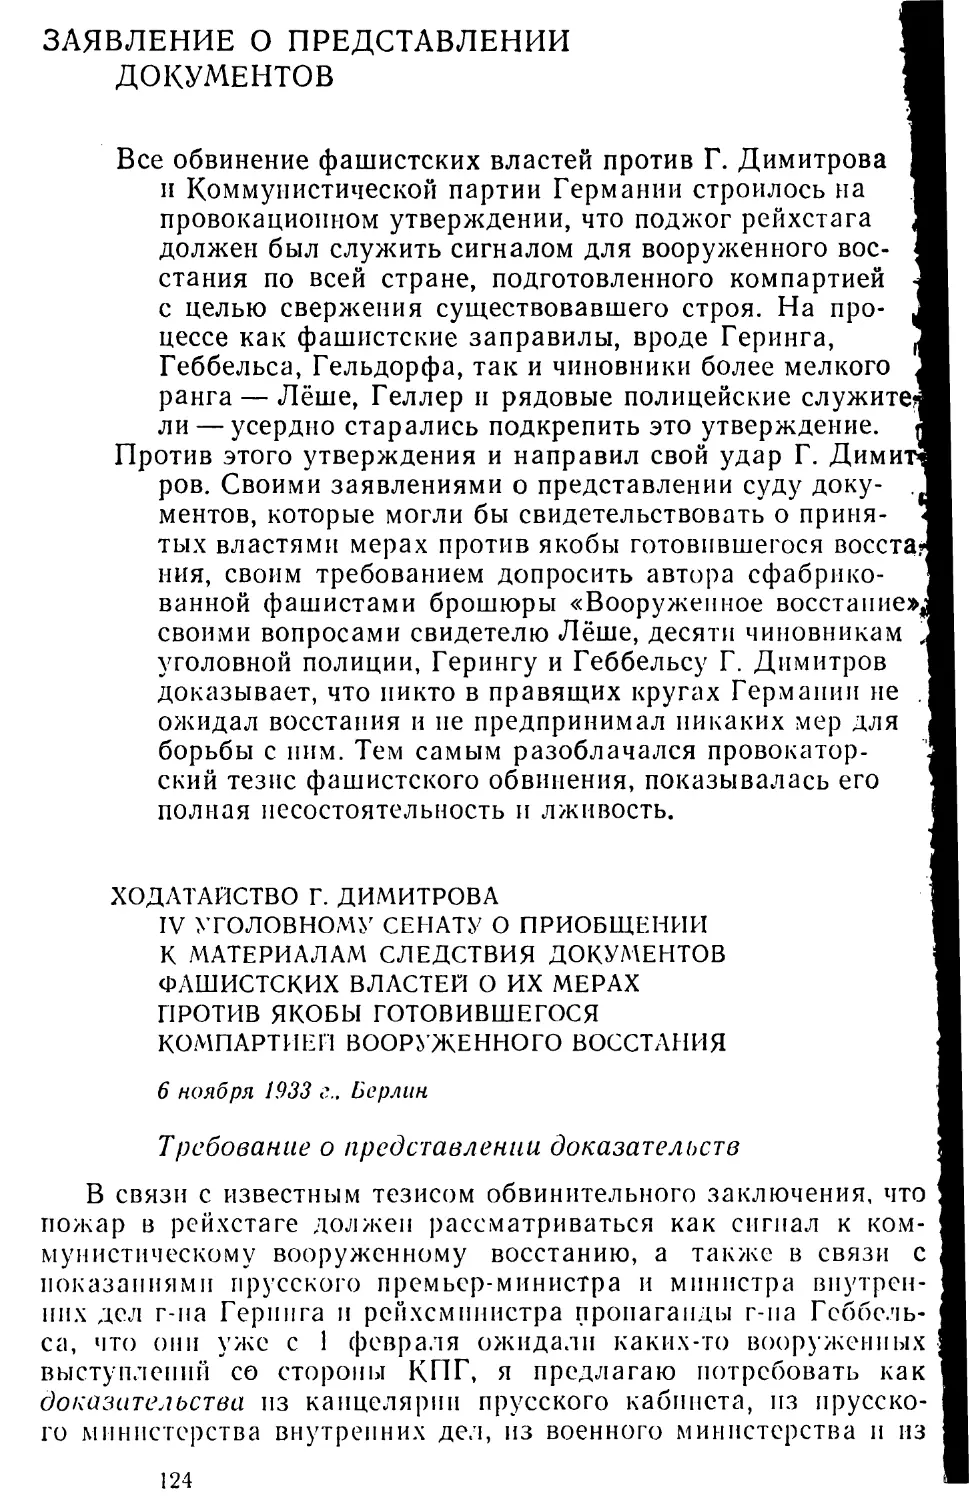 Заявление о представлении документов
Ходатайство Г. Димитрова IV уголовному сенату о приобщении к материалам следствия документов фашистских властей о их мерах против якобы готовившегося компартией вооруженного восстания. 6 ноября 1933 г